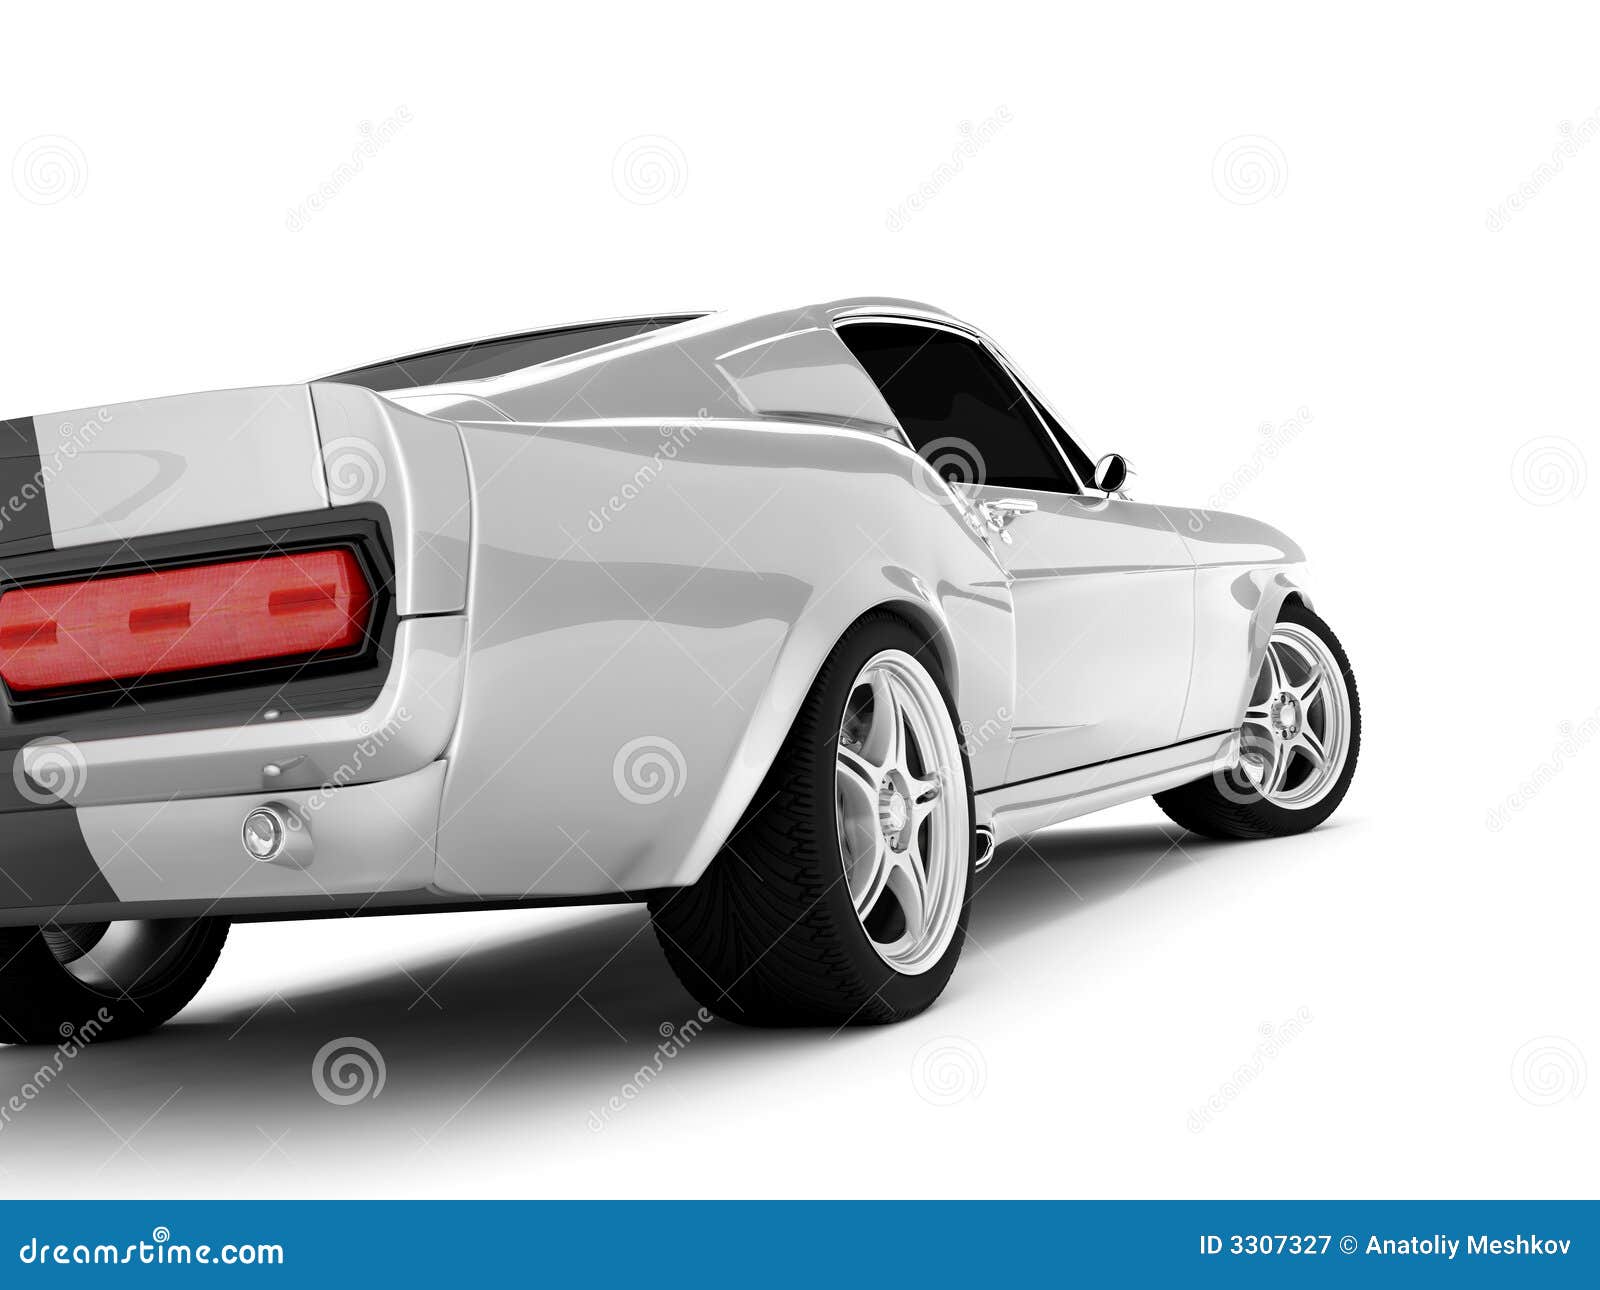 177 bilder, fotografier och illustrationer med Ford Mustang Shelby Gt500 -  Getty Images